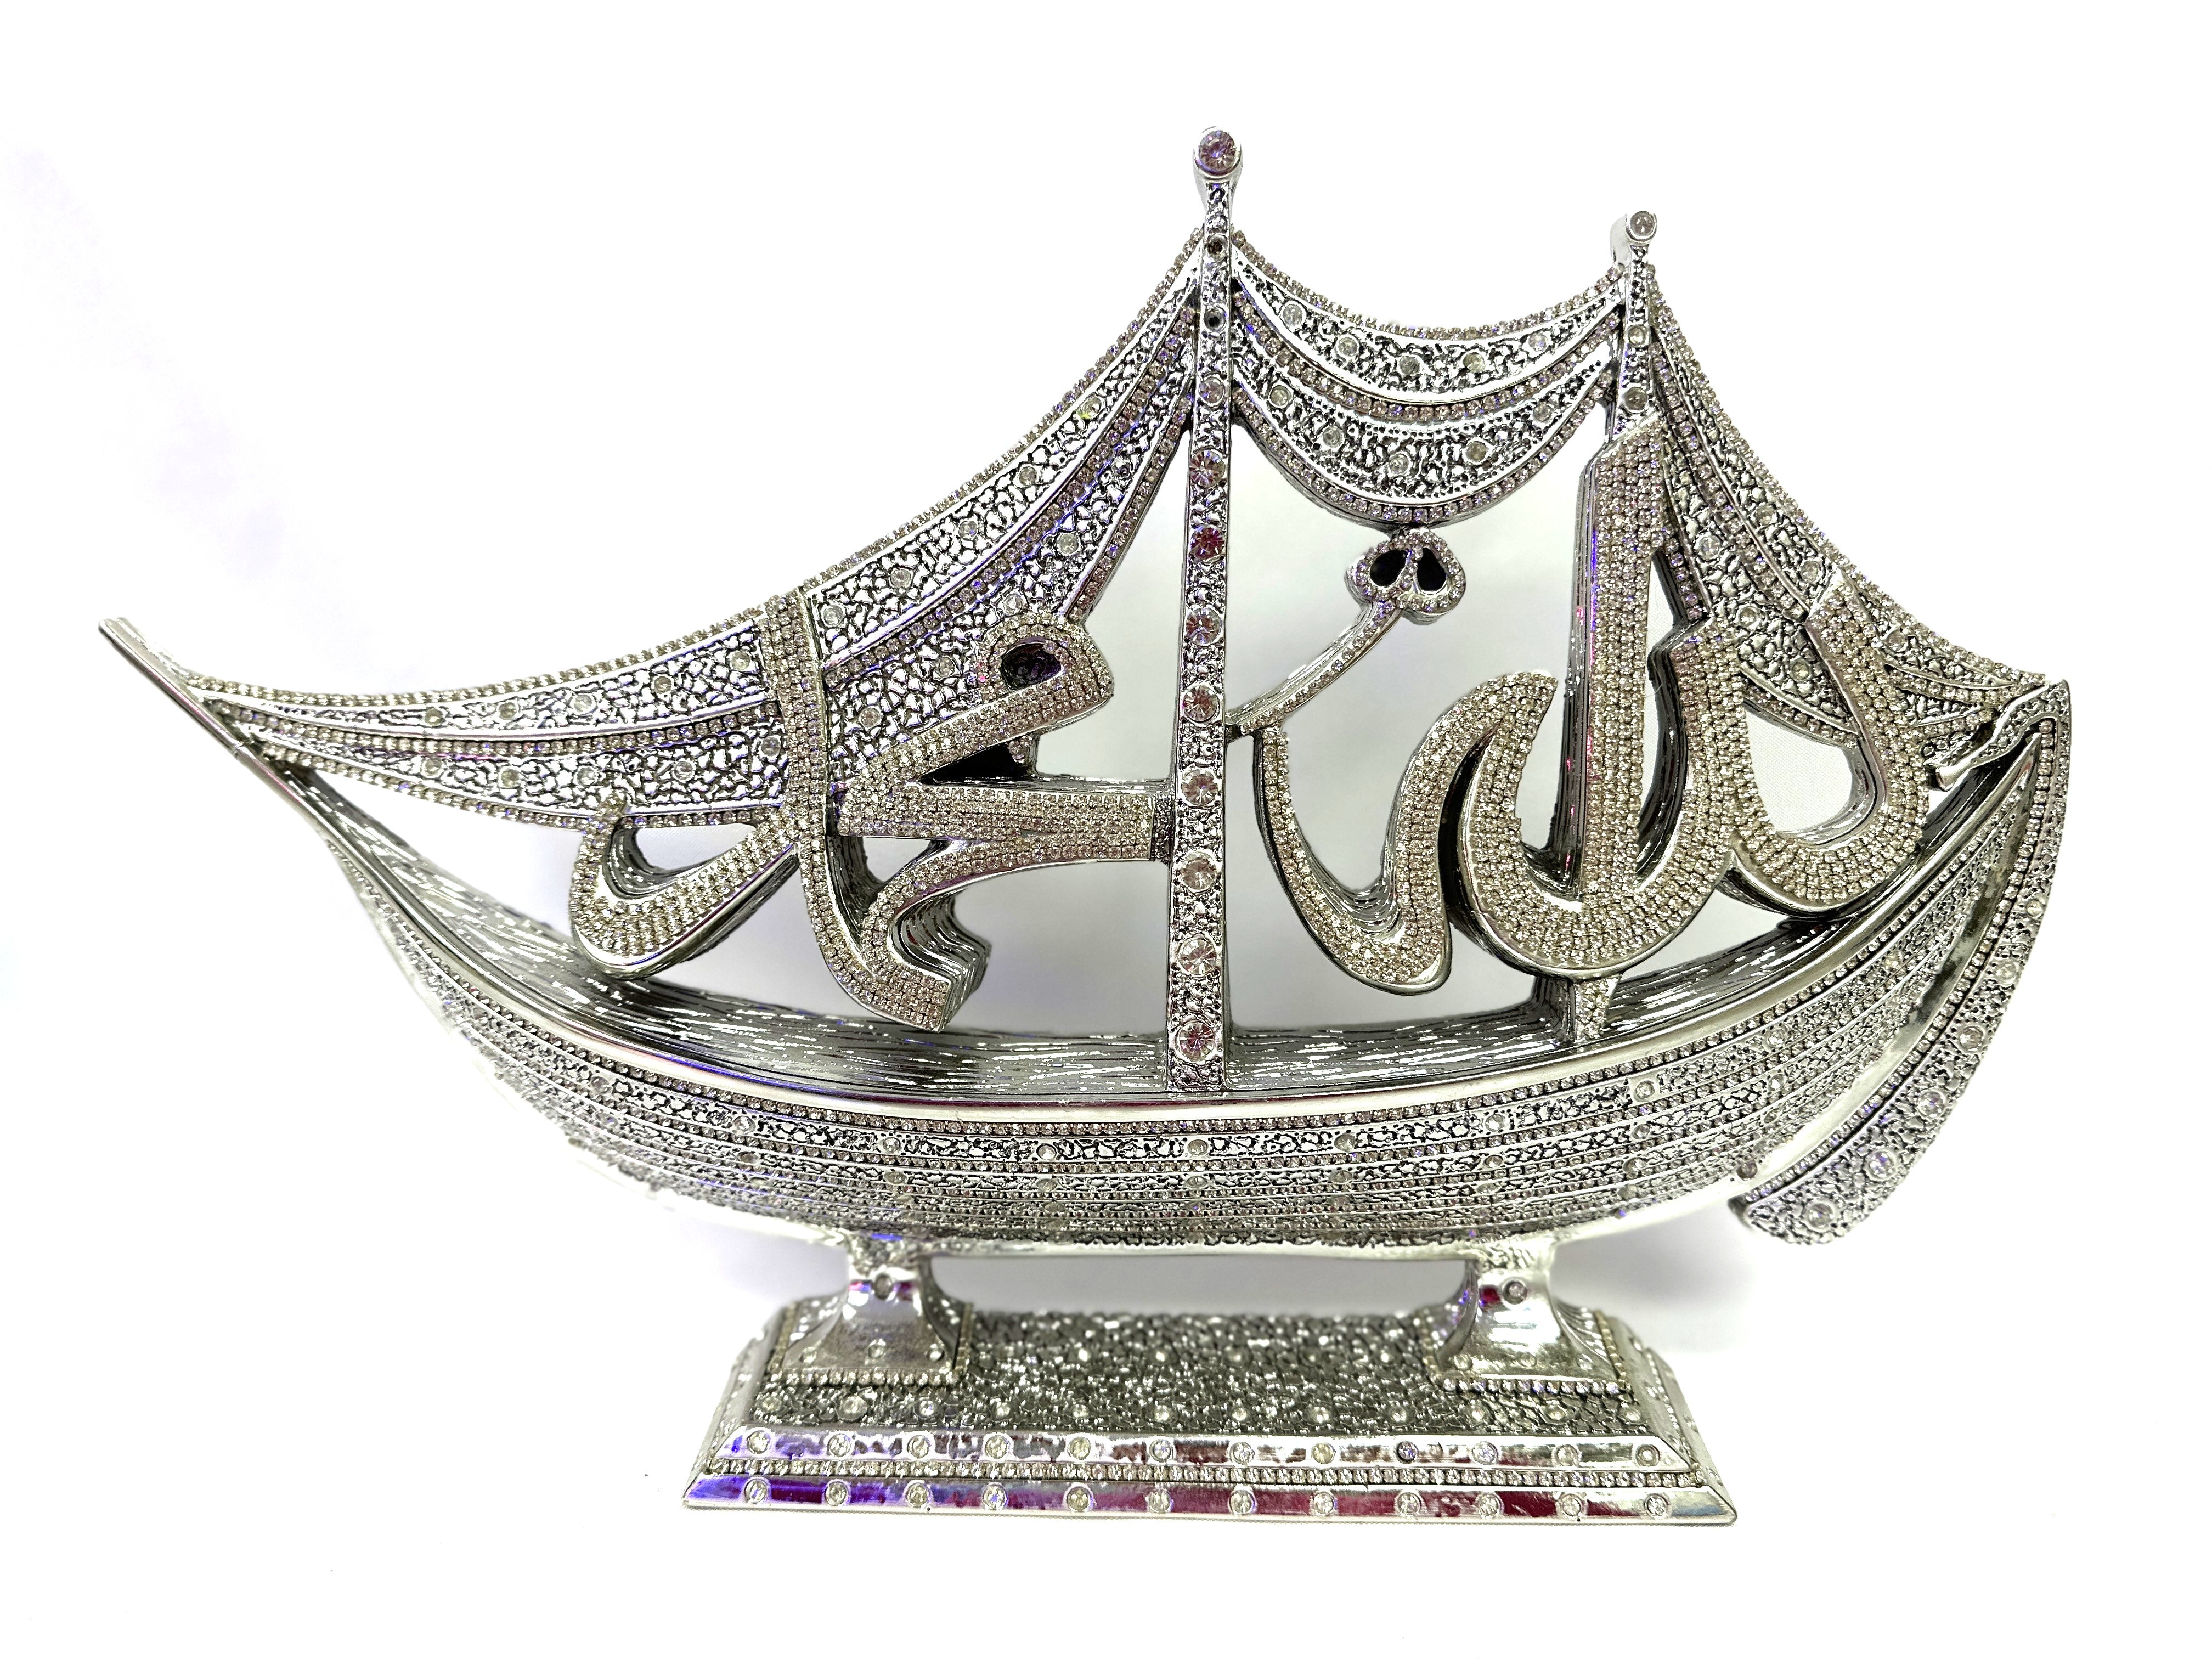 Goldish with shiny crystals islamic decoretion item